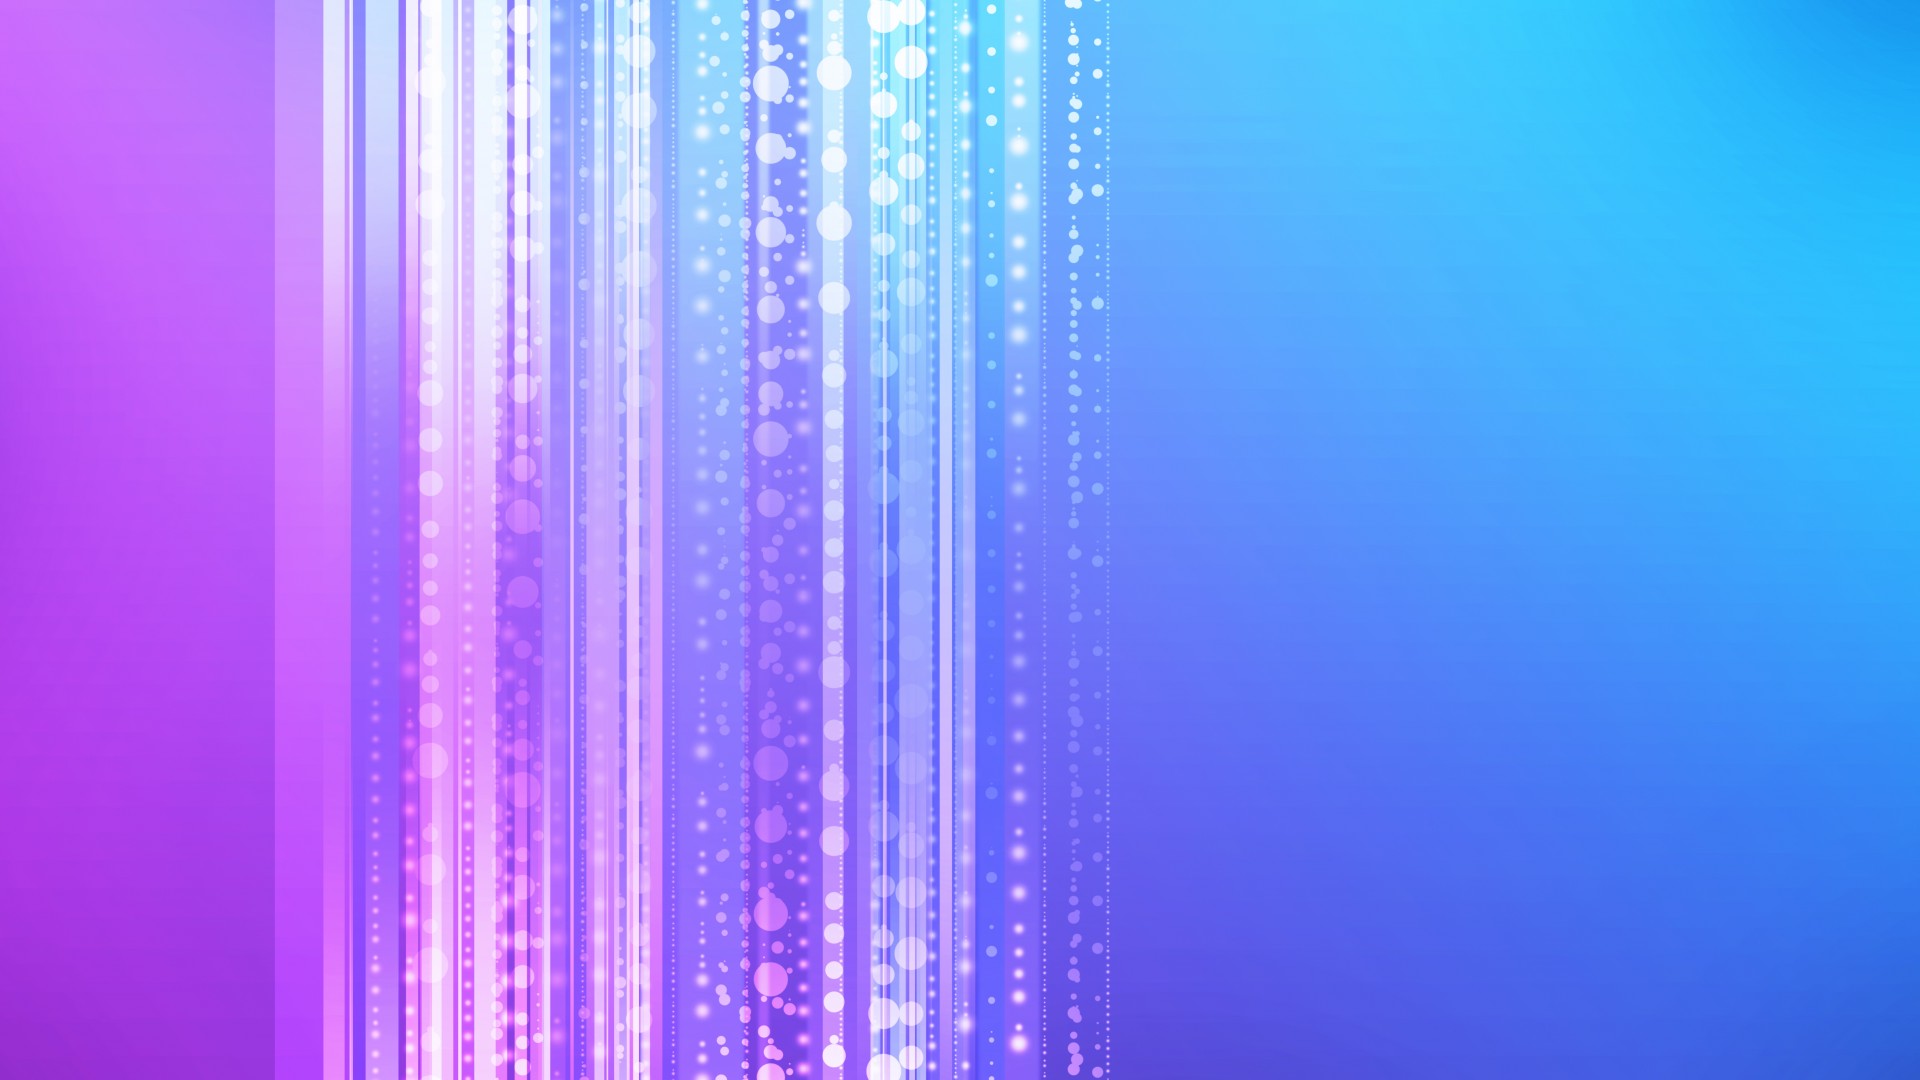 линии, 4k, 5k, голубой, фиолетовый, фон, lines, 4k, 5k wallpaper, 8k, vertical, blue, violet, background (horizontal)